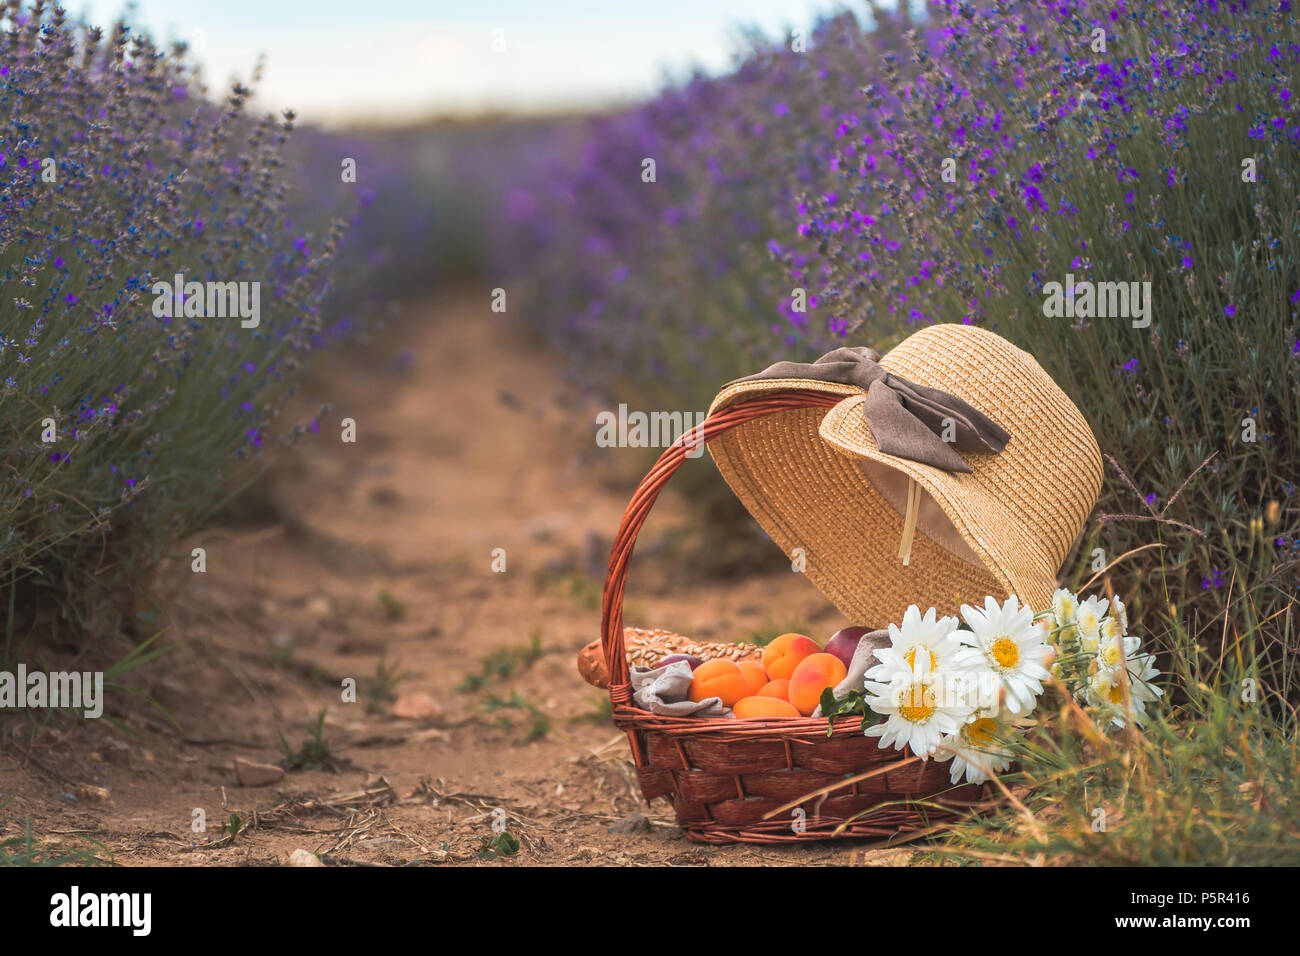 Schöne Korb mit Pfirsichen, Kamillenblüten und französische Baguettes mit einem Strohhut auf der Oberseite in einem wunderschönen blühenden Lavendel Feld in Lowetsch Stockfoto